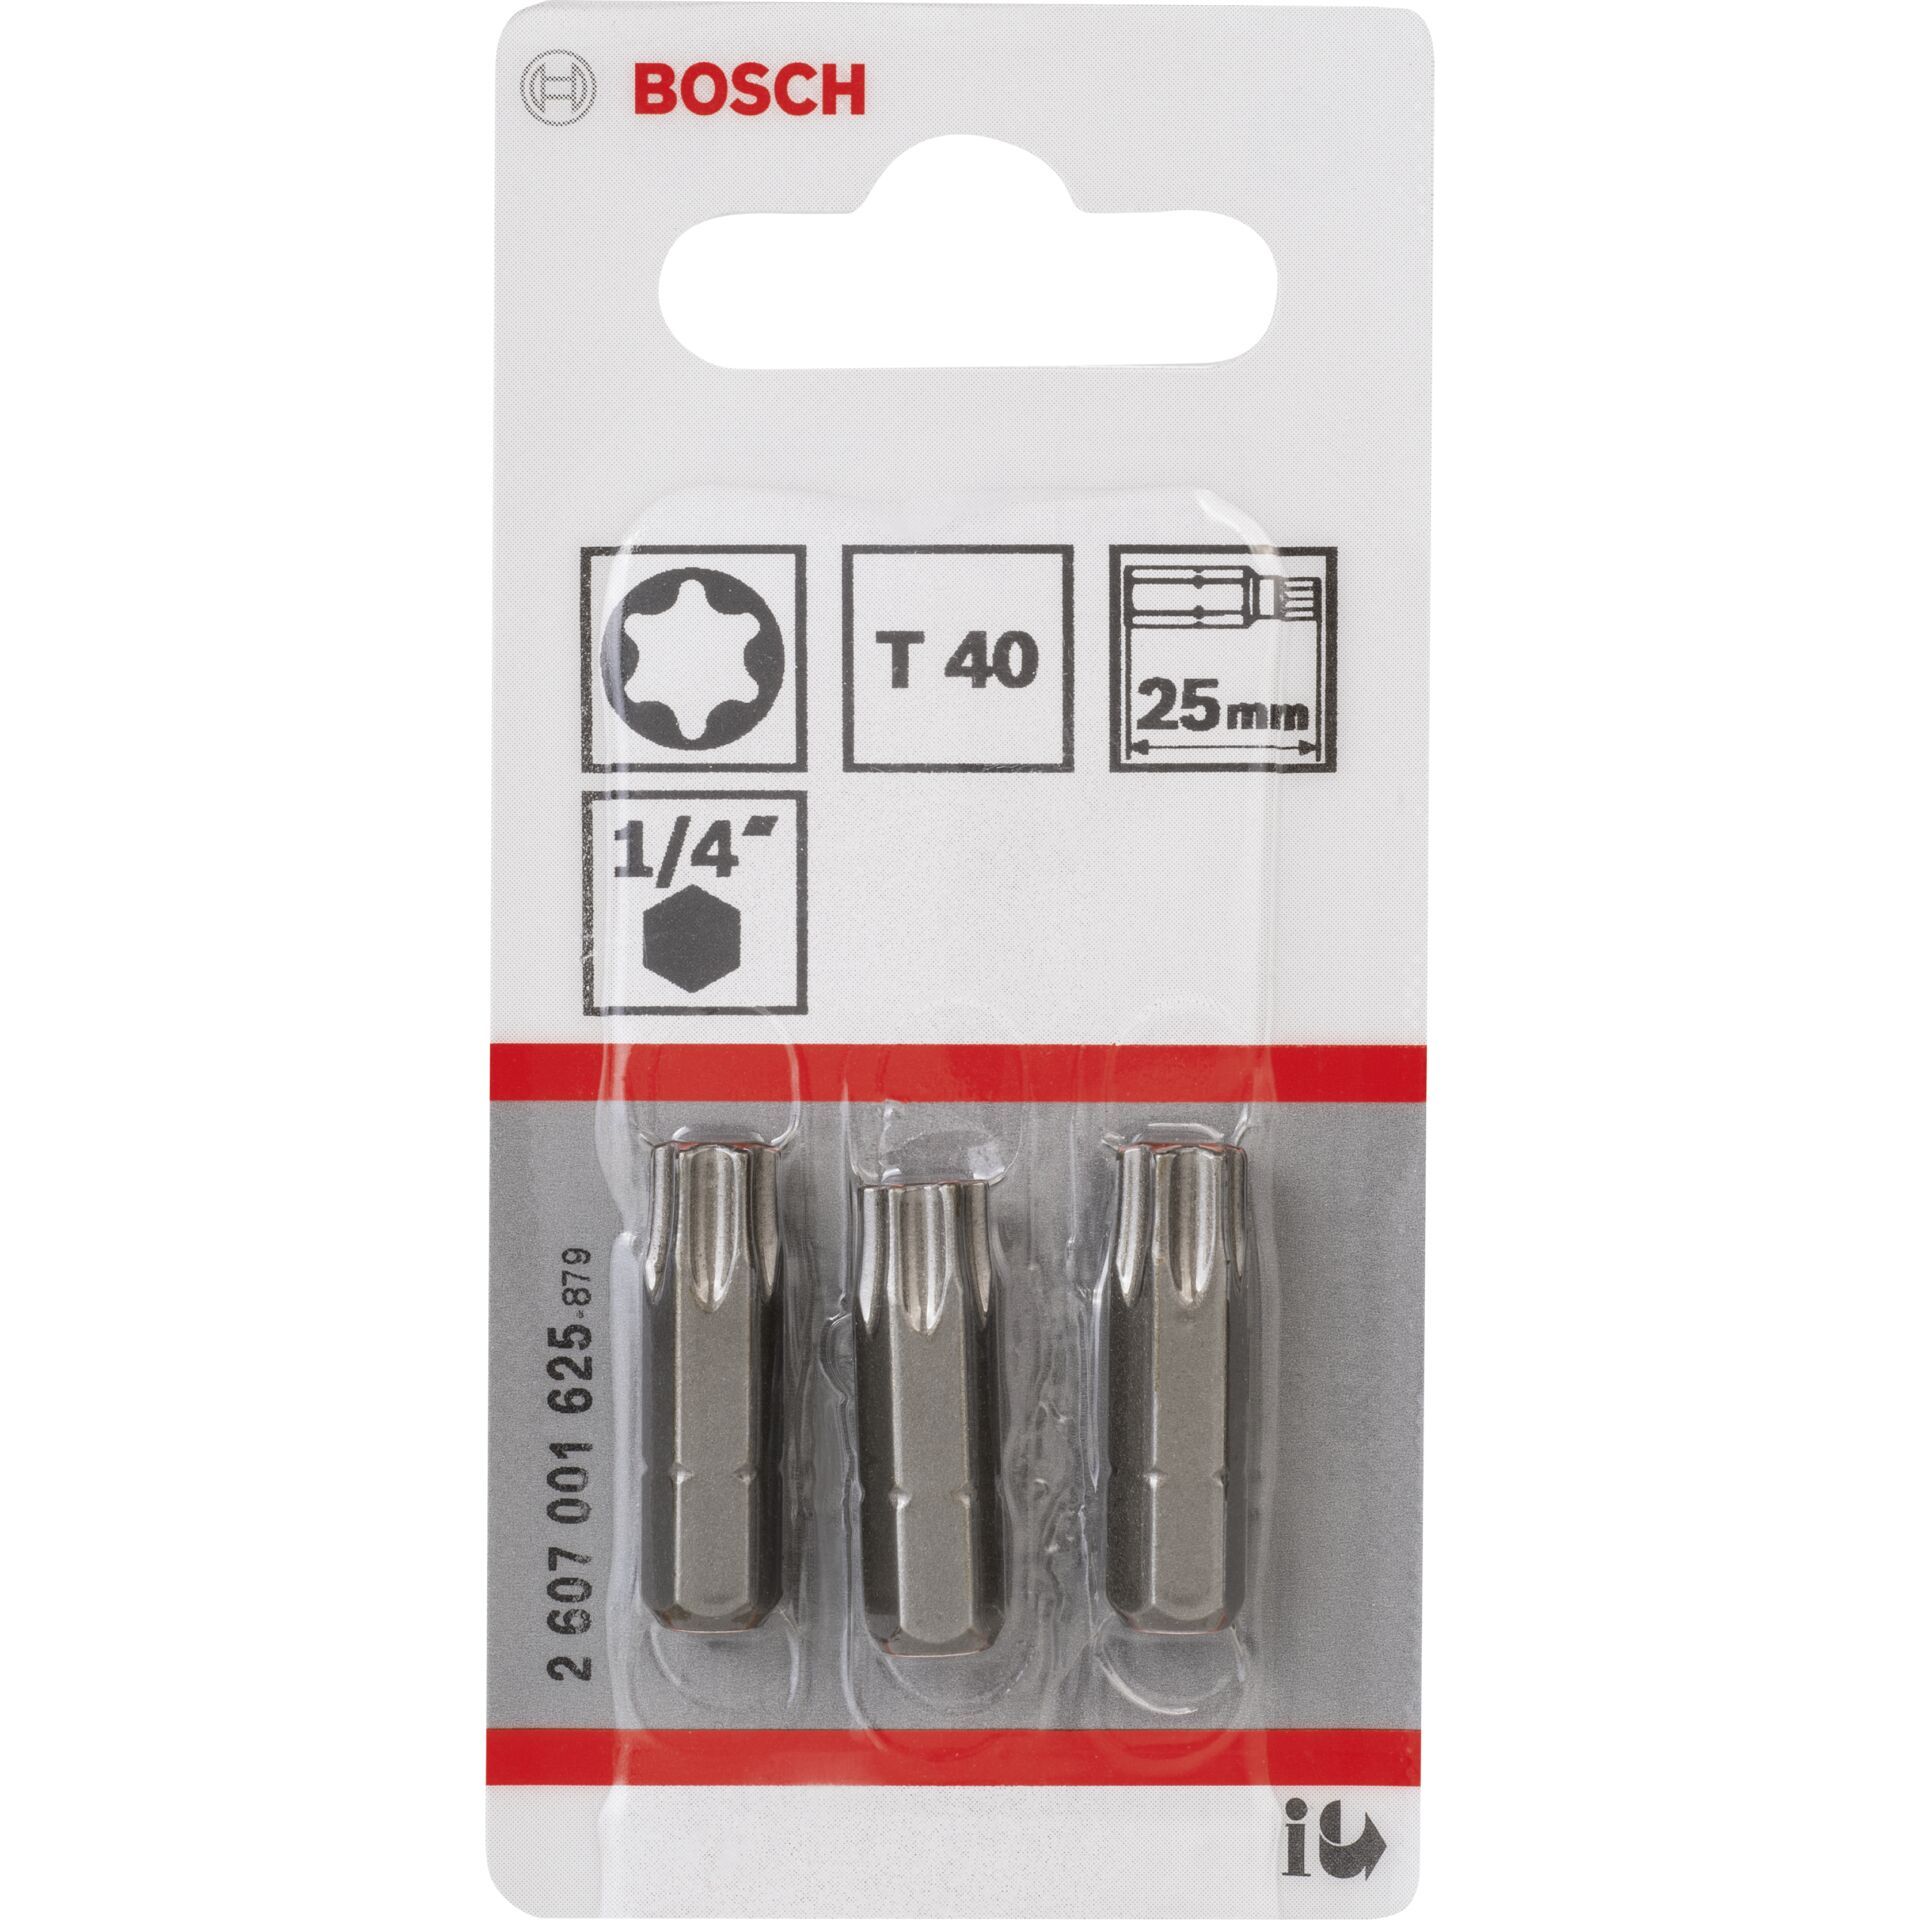 Bosch 3pcs. Screwdriver Bits T40 XH 25mm